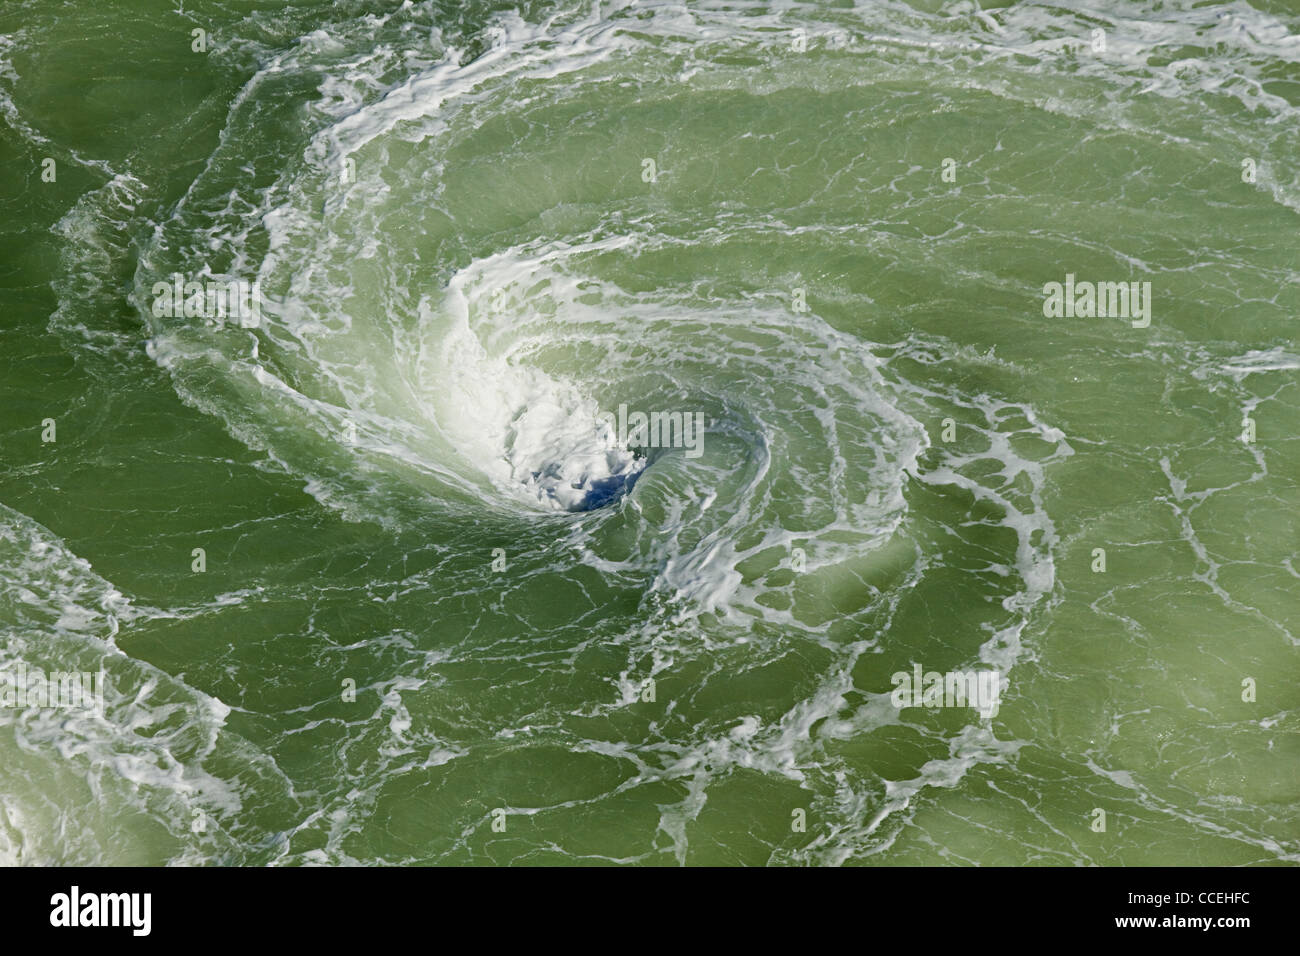 Vortex oder Whirlpool mit Schaum in den Fluss gemacht durch drehen Schiff verleiht dem Wasser eine hellgrüne Farbe Stockfoto